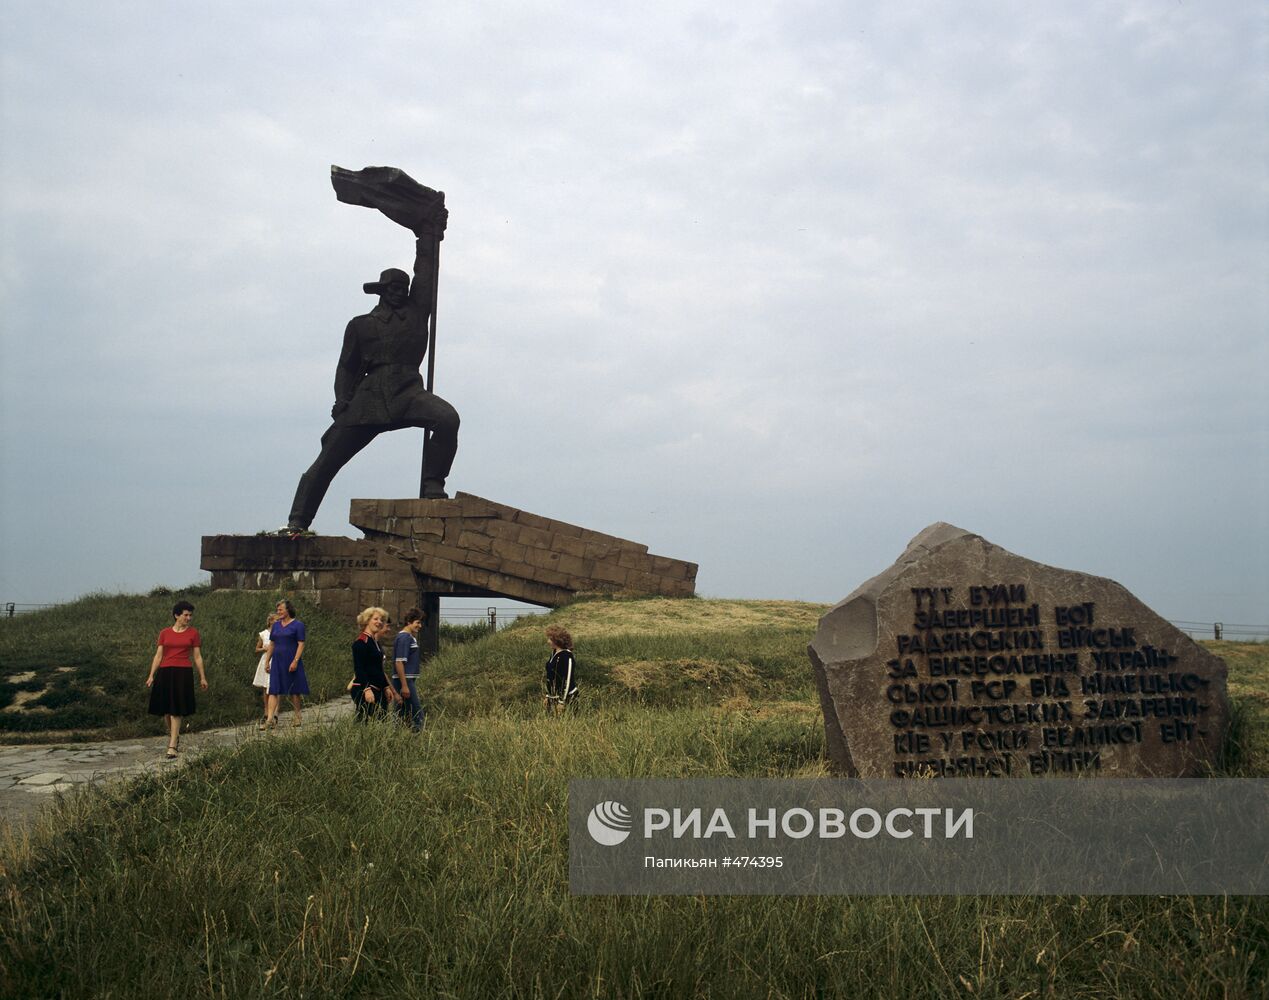 Памятник "Украина - освободителям"